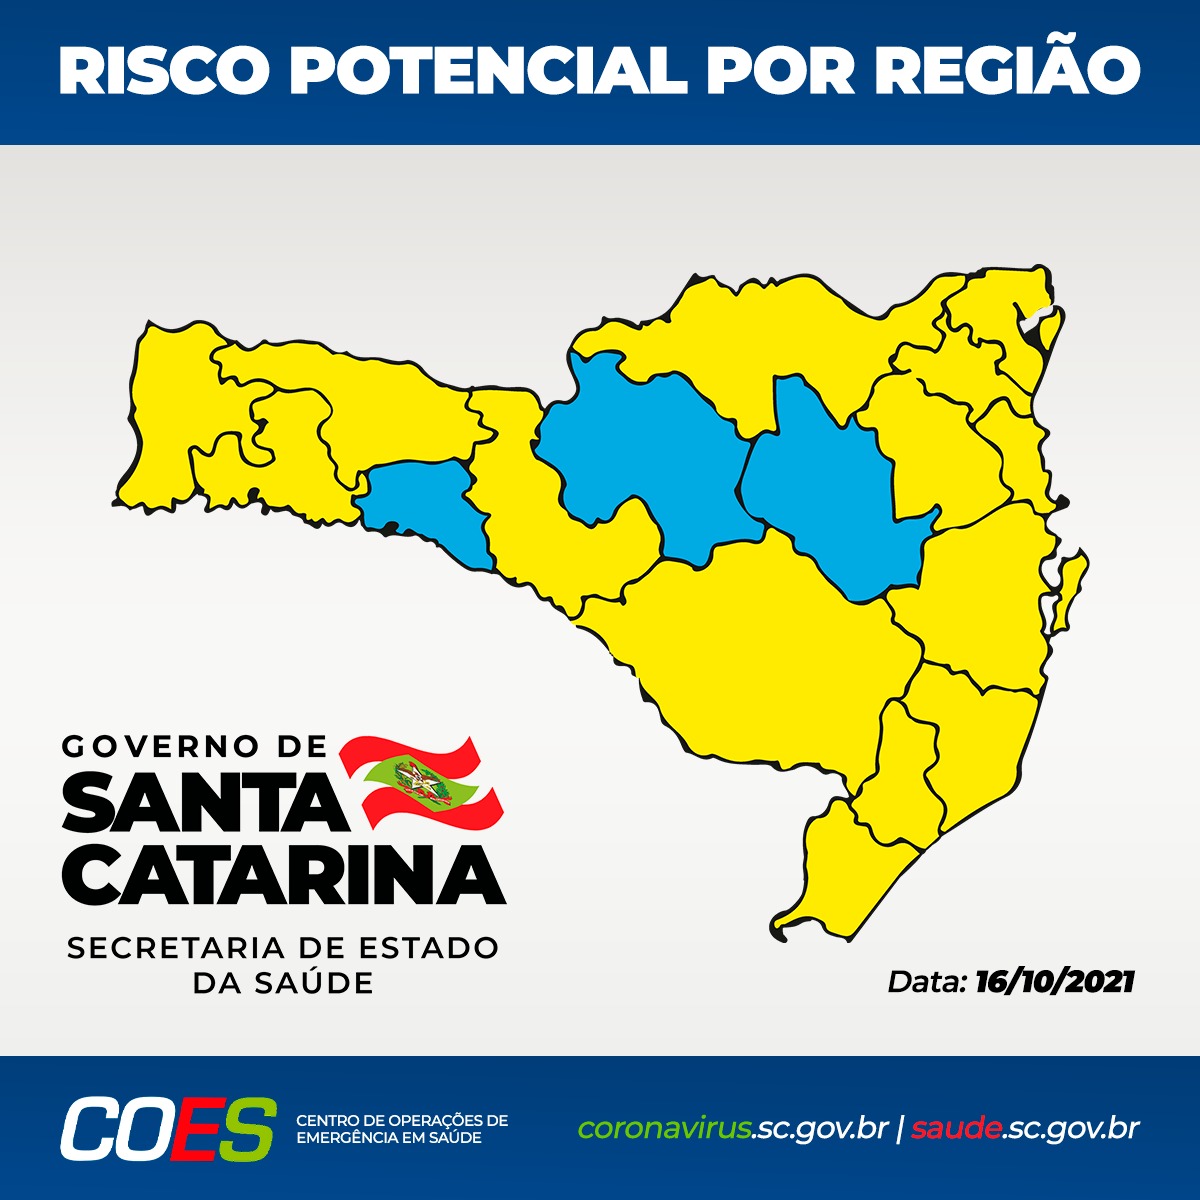 O município de Jaraguá do Sul encontra-se em risco potencial ALTO, conforme mapemamento da Secretaria de Estado da Saúde divulgado em 16 de outubro de 2021.